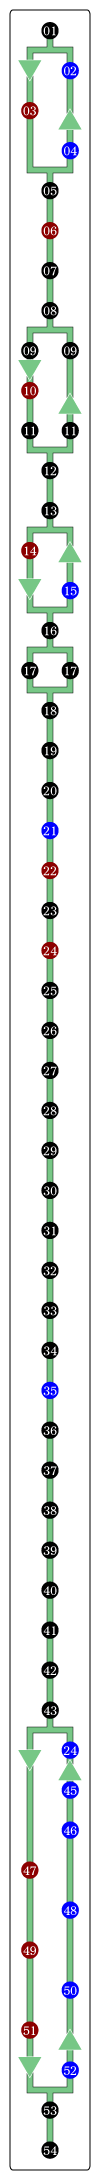 パリのバス93番　バス路線図